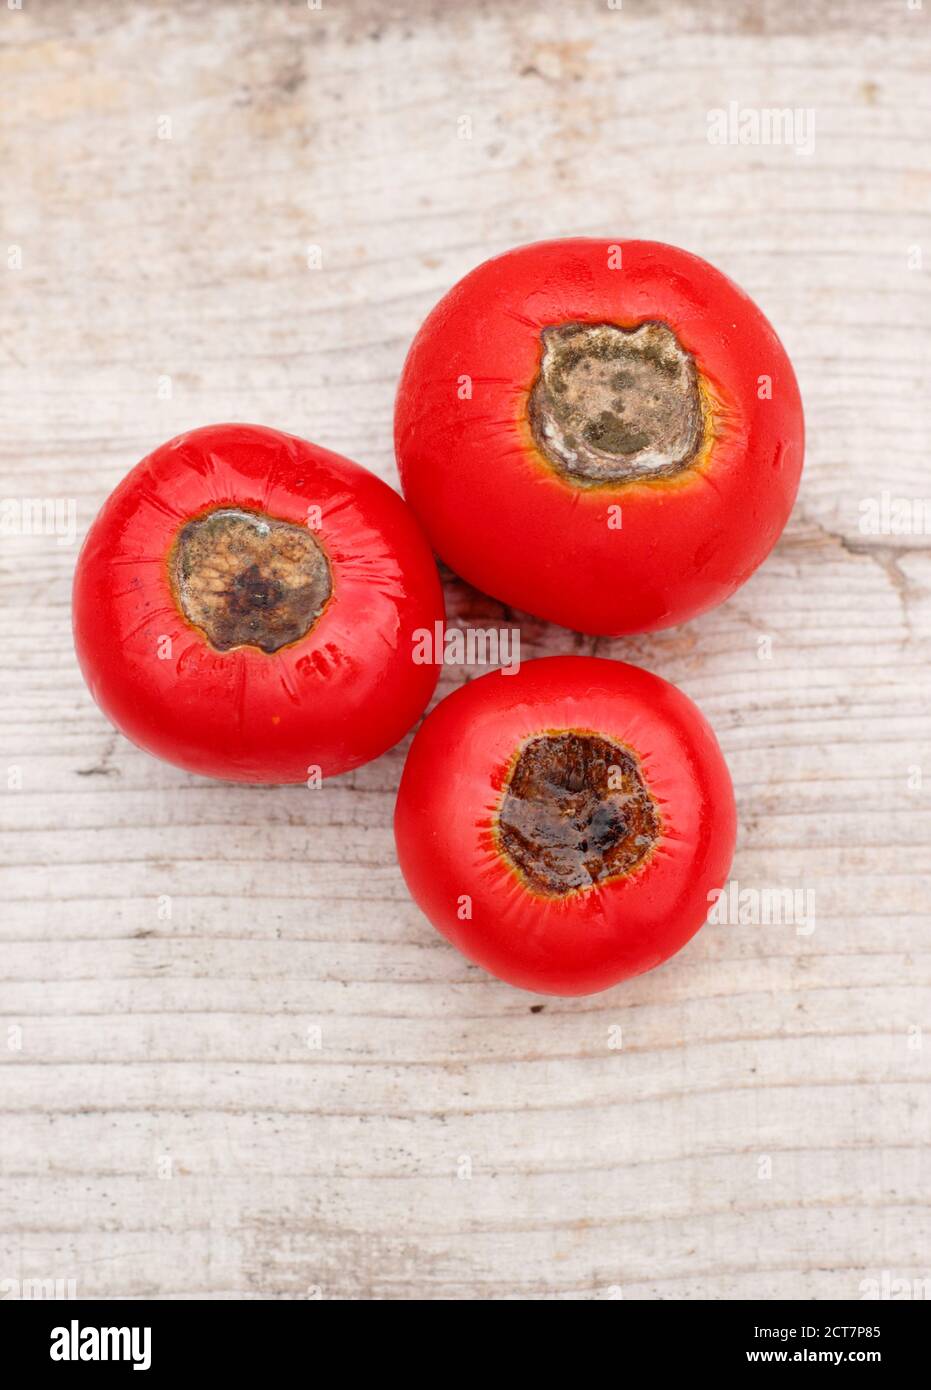 Tomates cultivados en casa con pudrición final de flor causada por la falta de calcio y problemas de riego asociados. Solanum lycopersicum 'Alicante'. Foto de stock